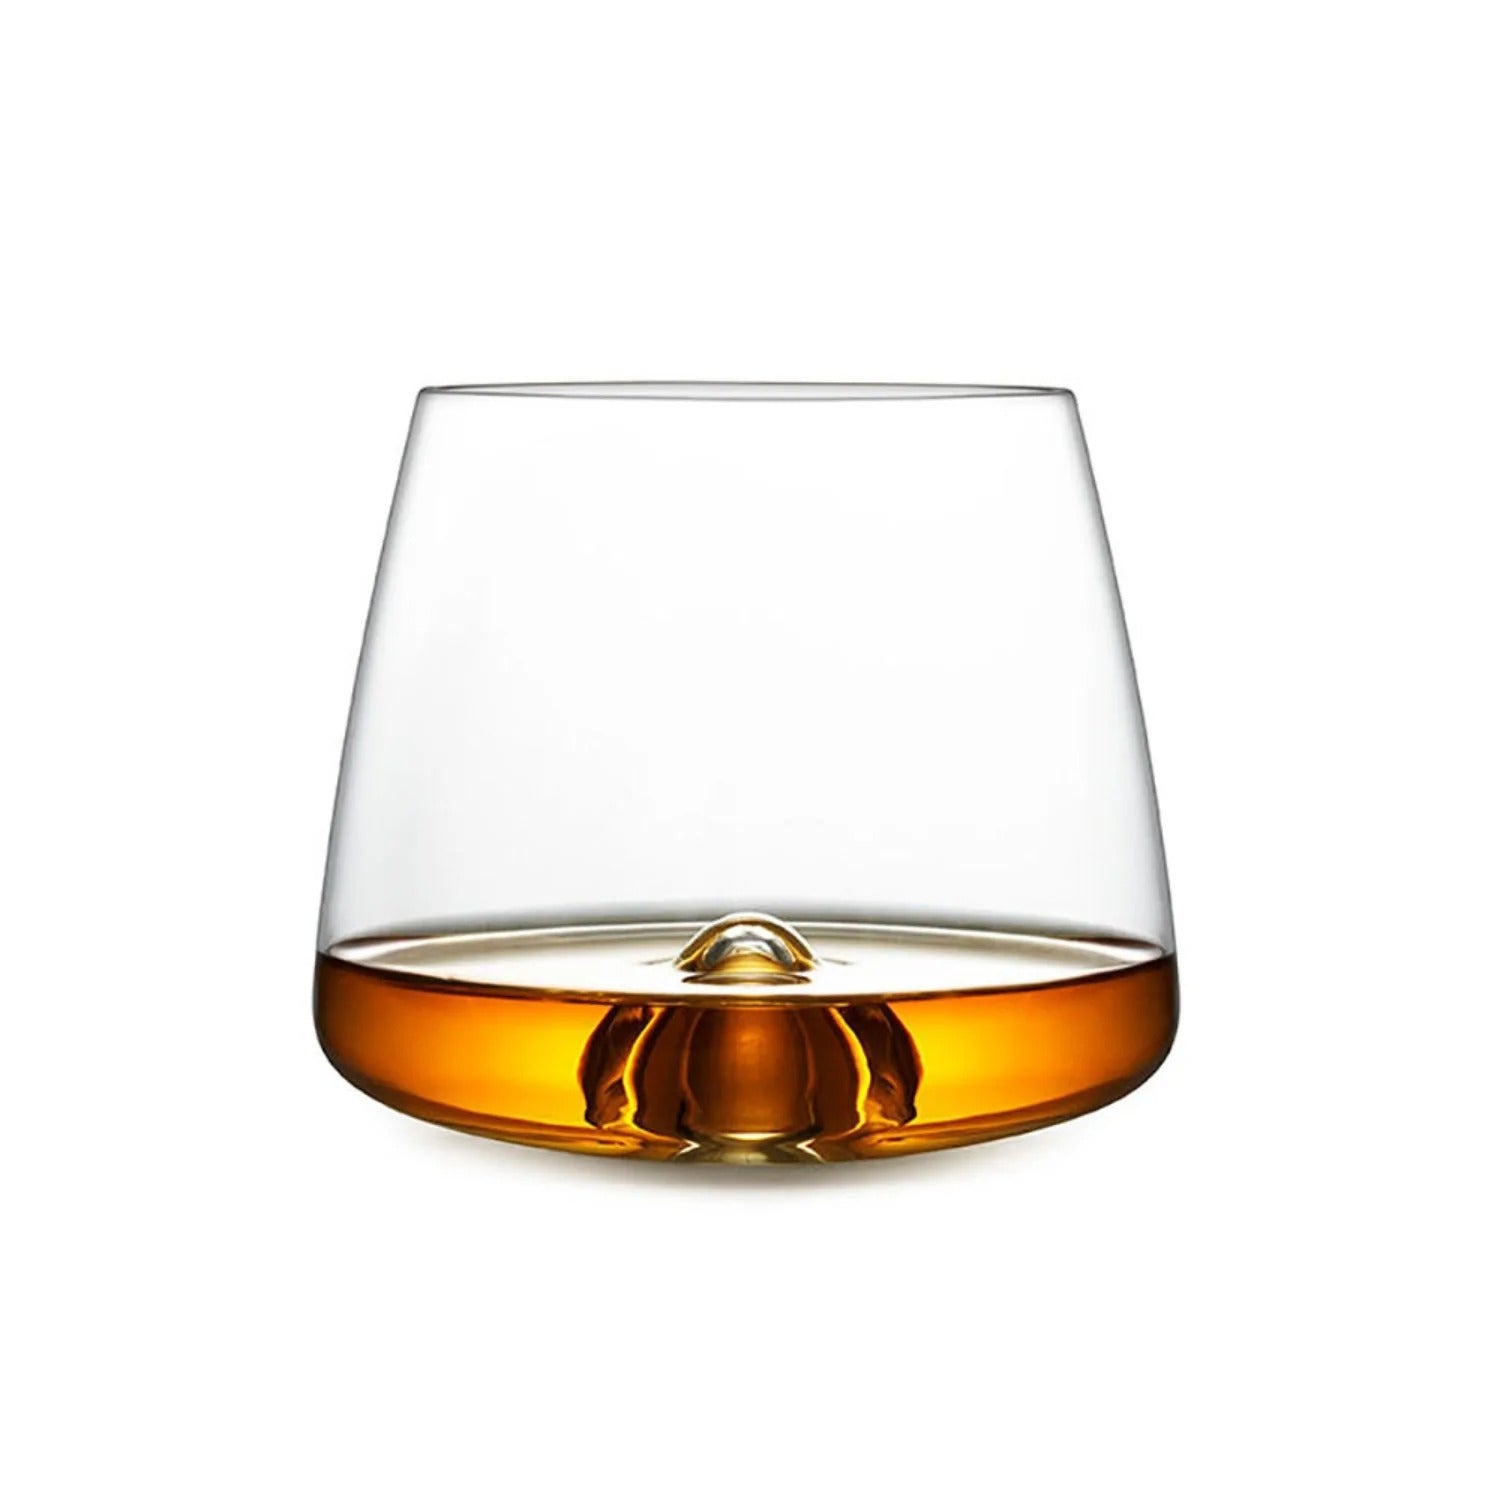 normann copenhagen | whisky glasses | set of 2